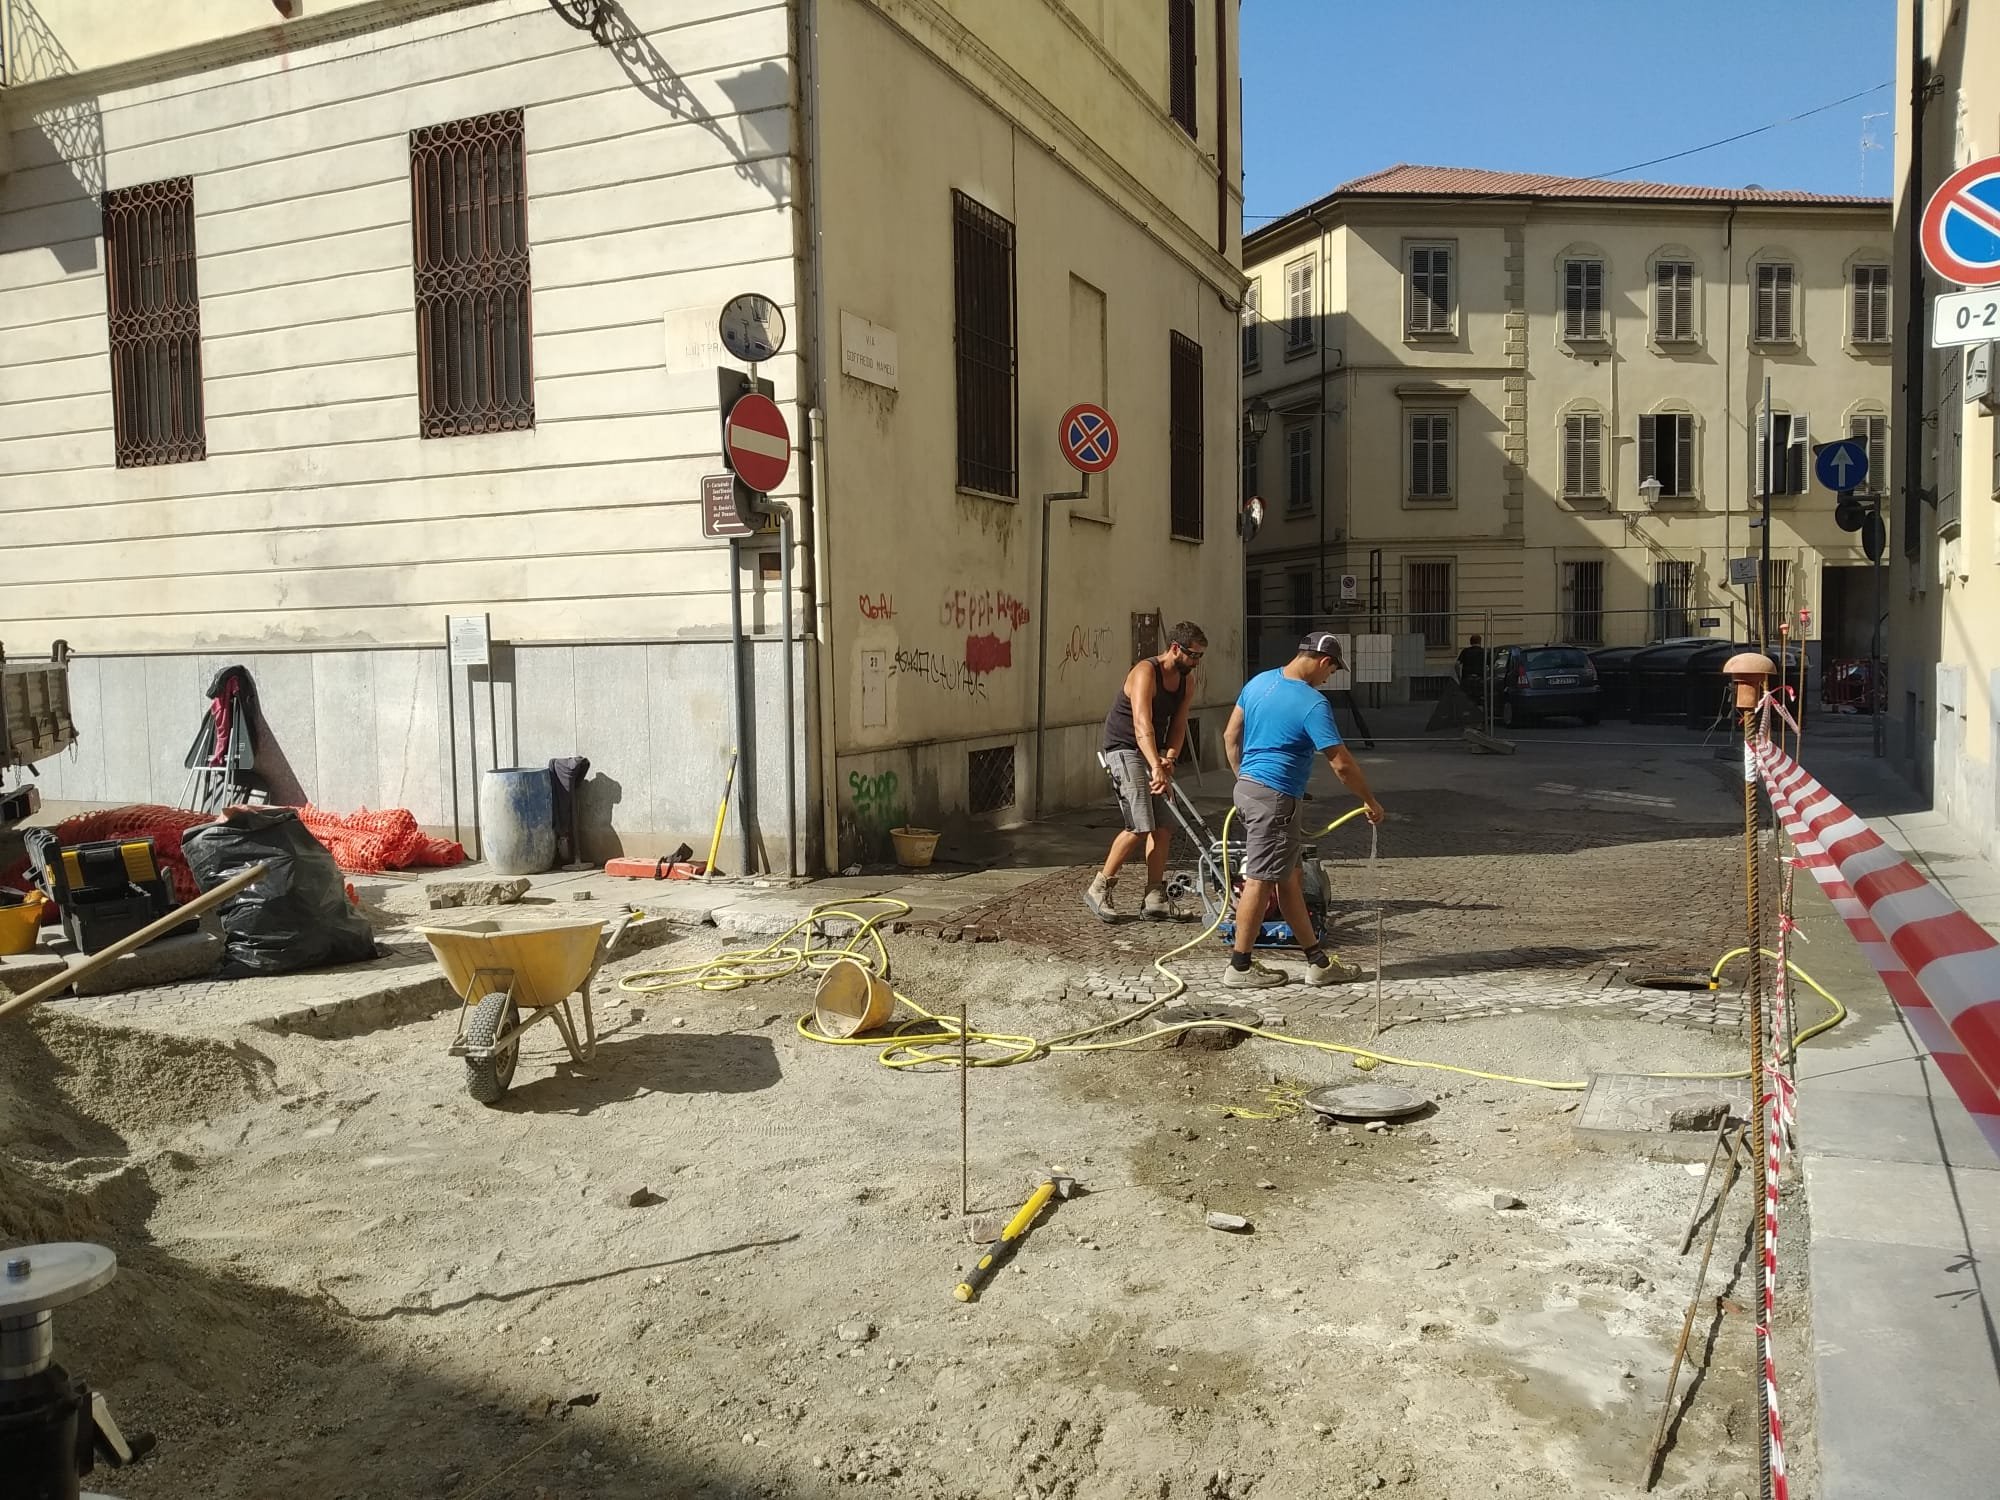 A Casale proseguono i lavori in via Mameli: le nuove modifiche alla viabilità da mercoledì